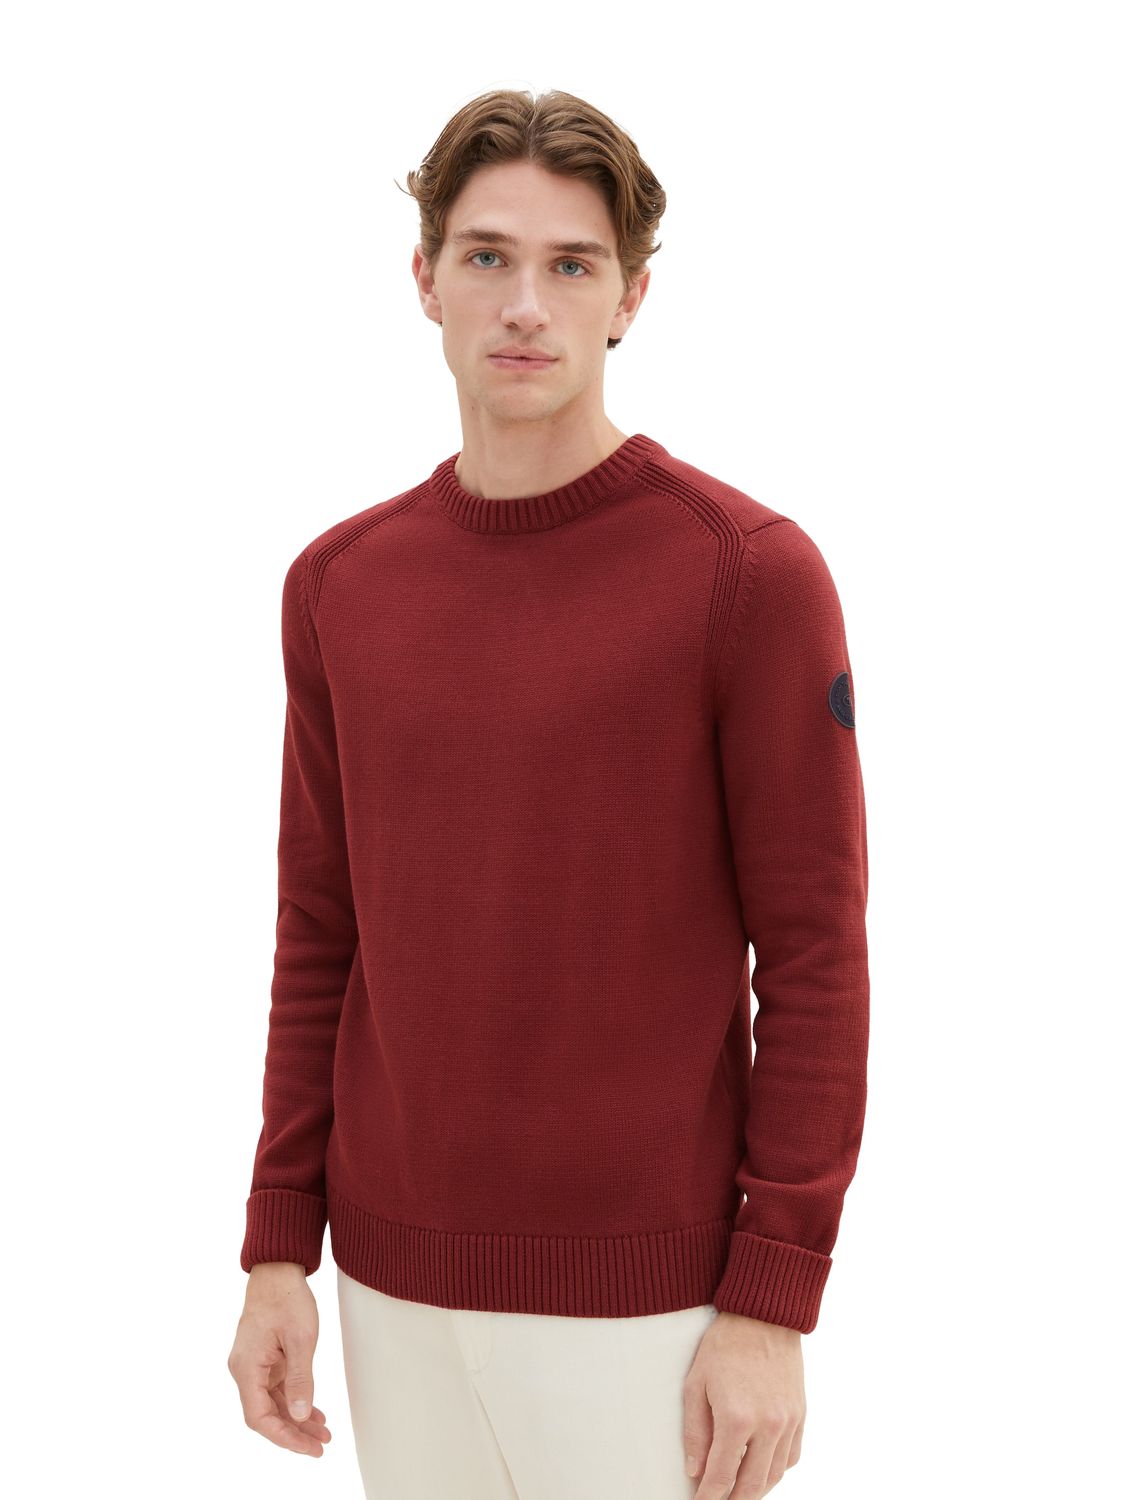 Пуловер Tom Tailor CREWNECK KNIT, красный пуловер tom tailor размер s красный